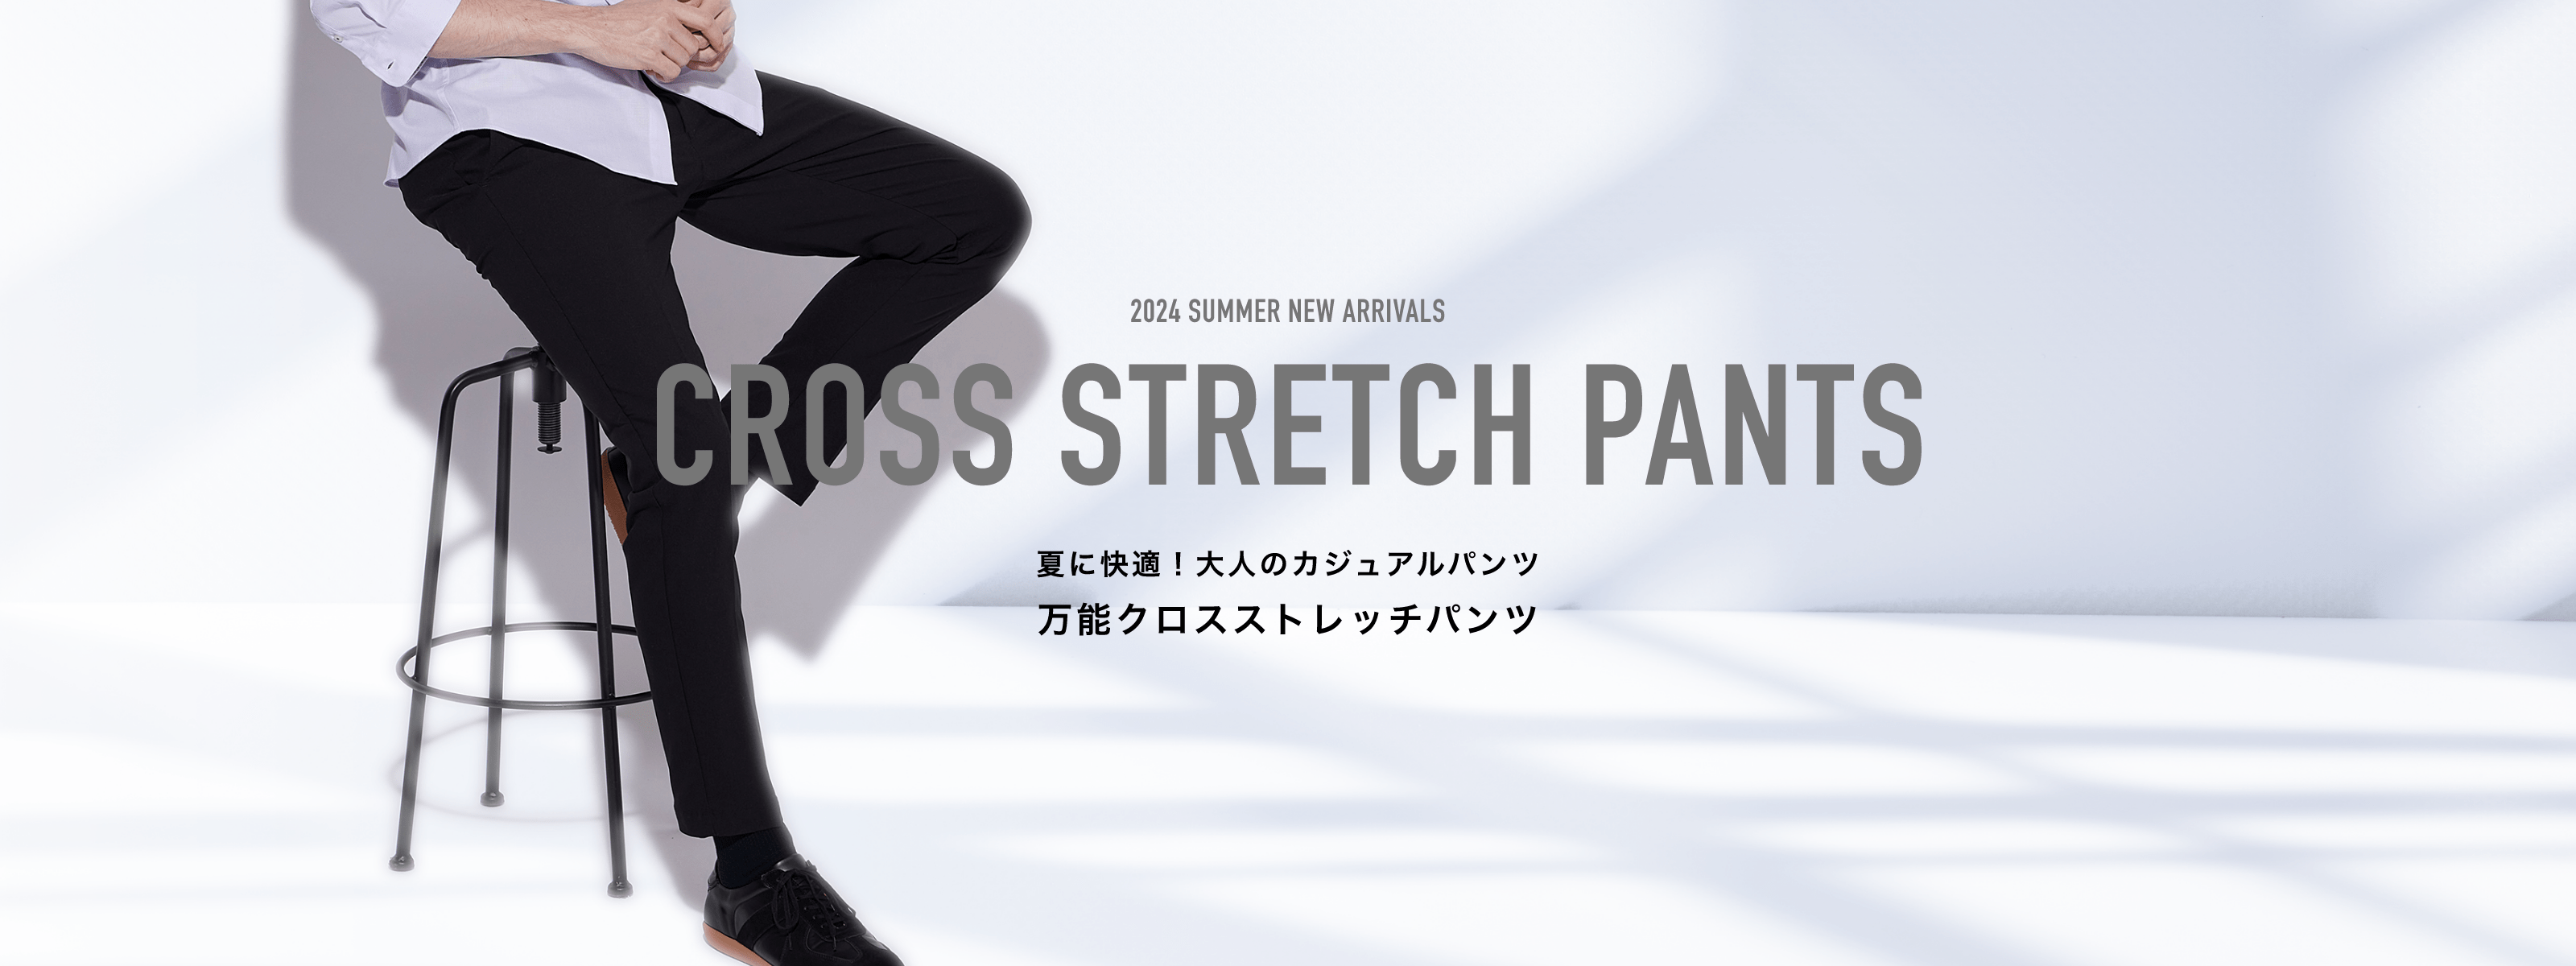 CROSS STRETCH PANTS 夏に快適！万能クロスストレッチパンツ